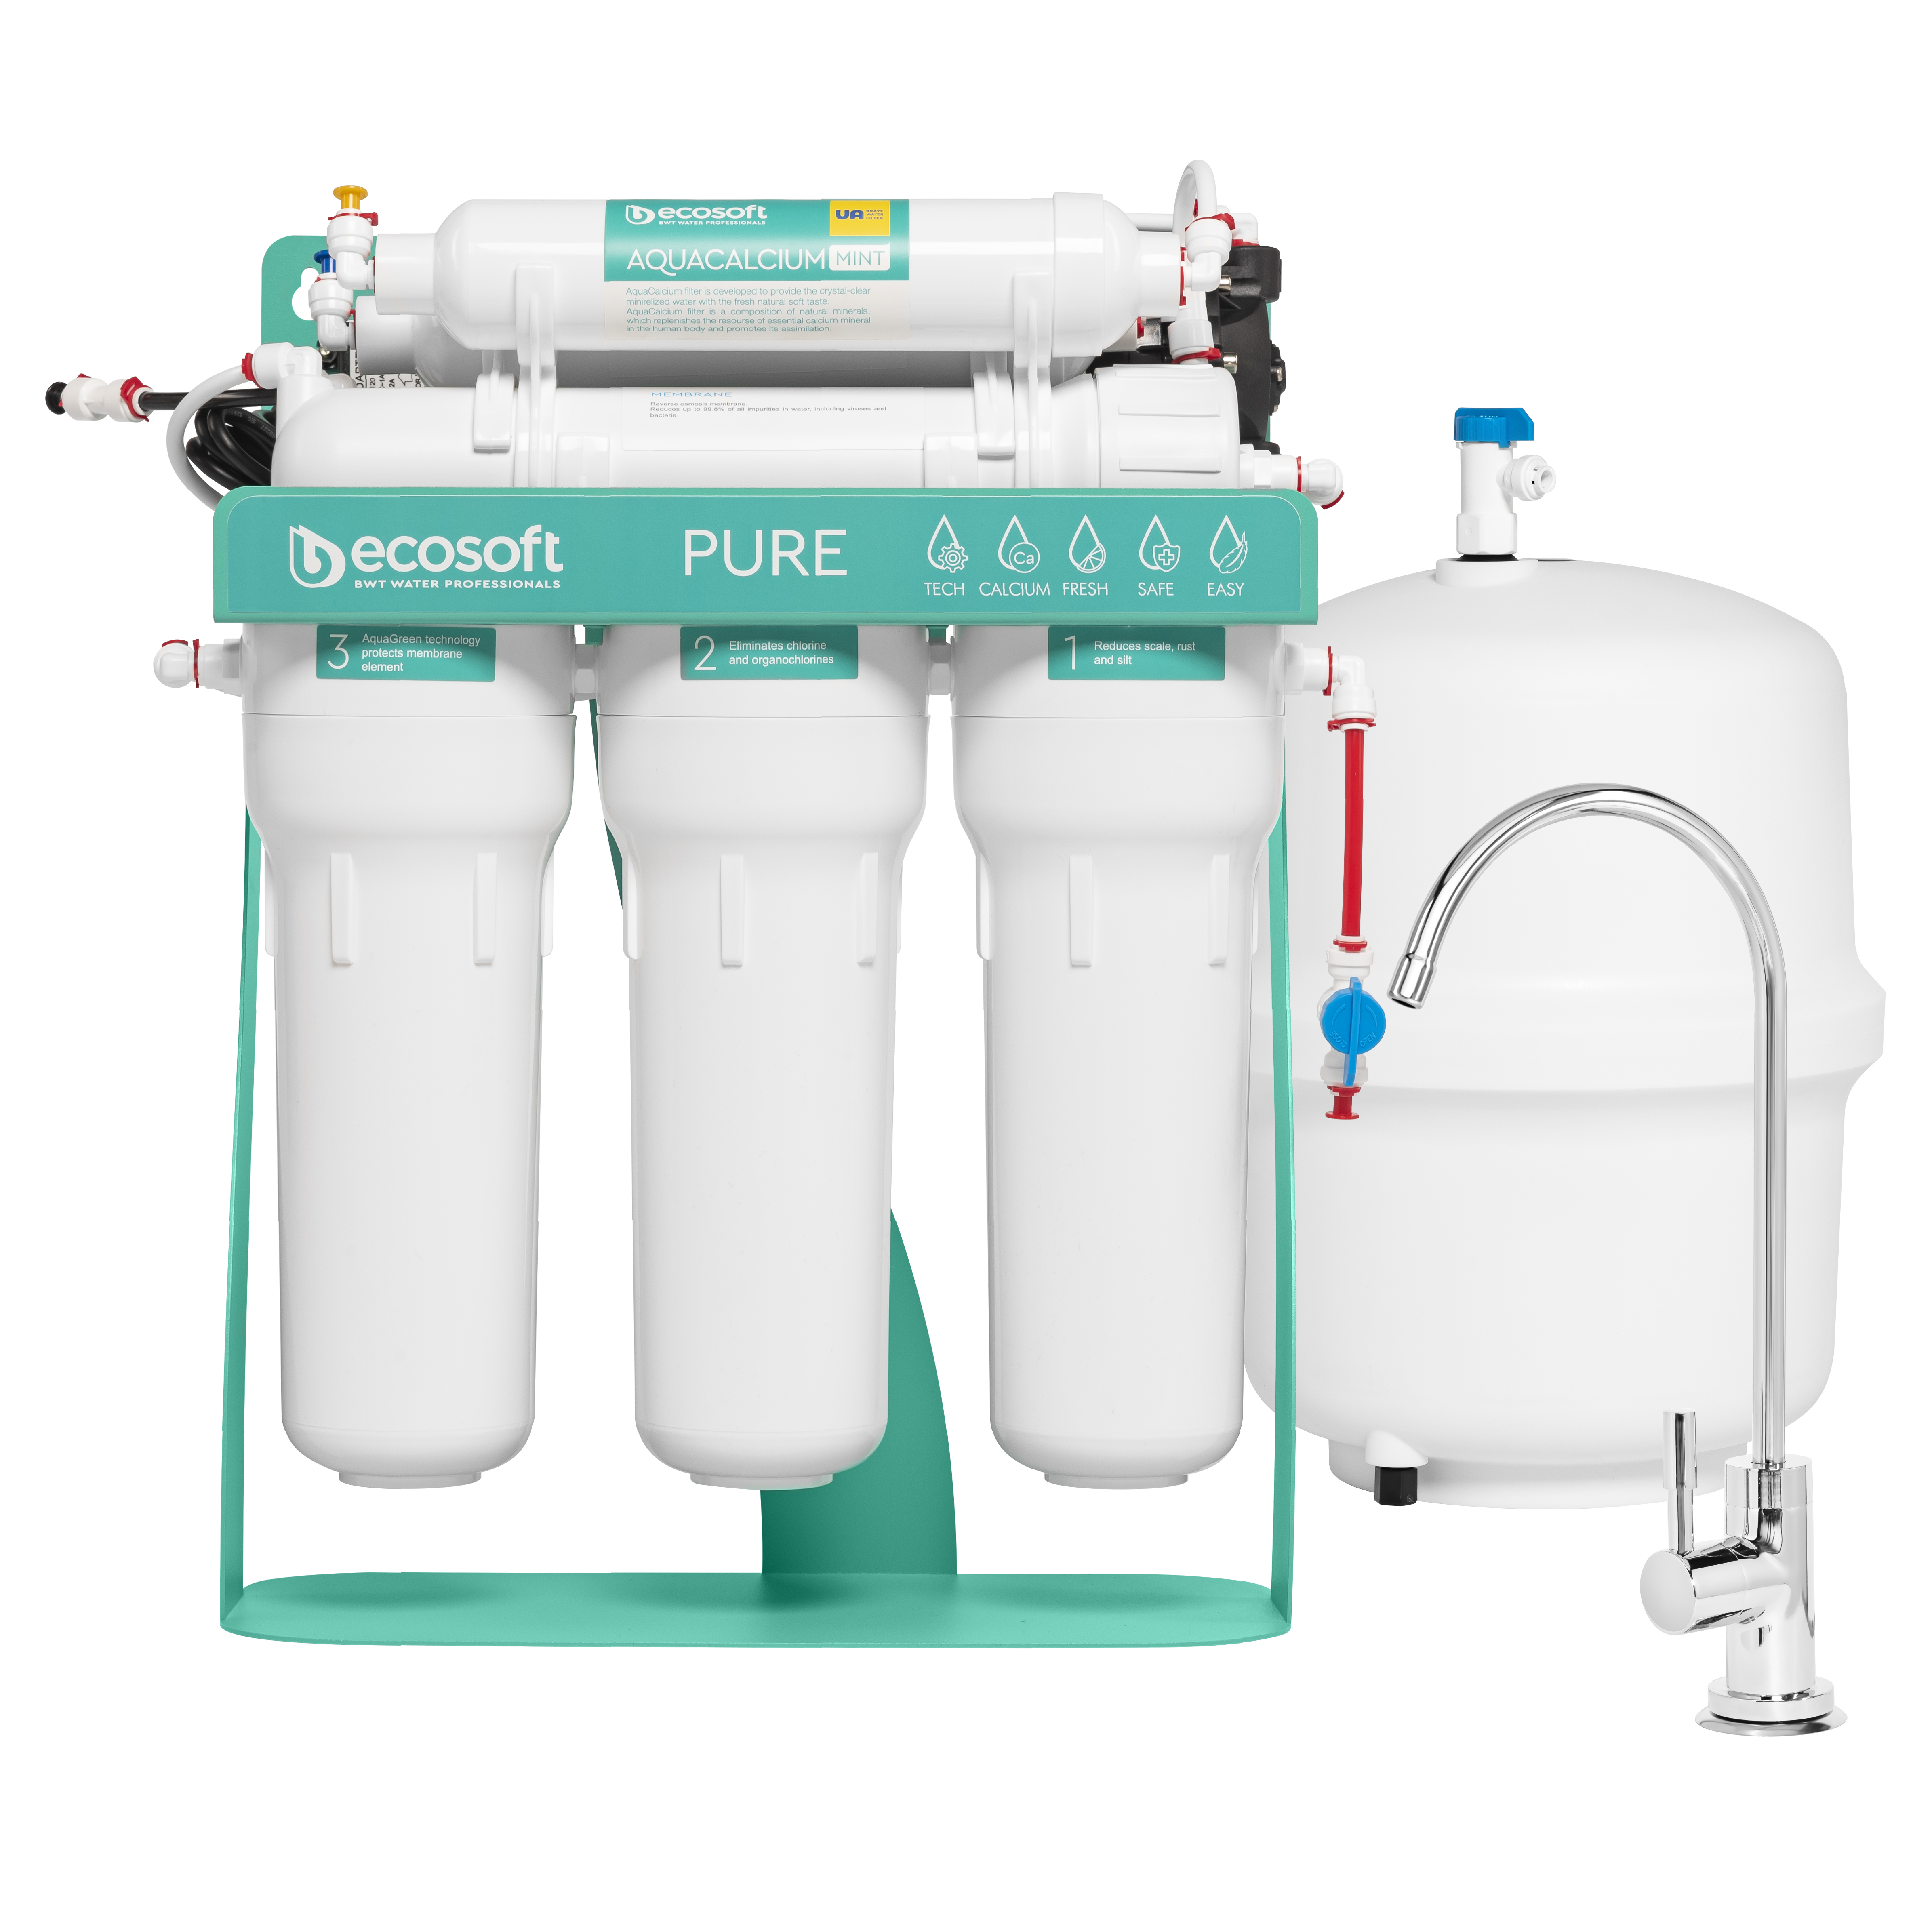 Фильтр Ecosoft для воды Ecosoft Pure AquaCalcium Mint MO675PSMACECO